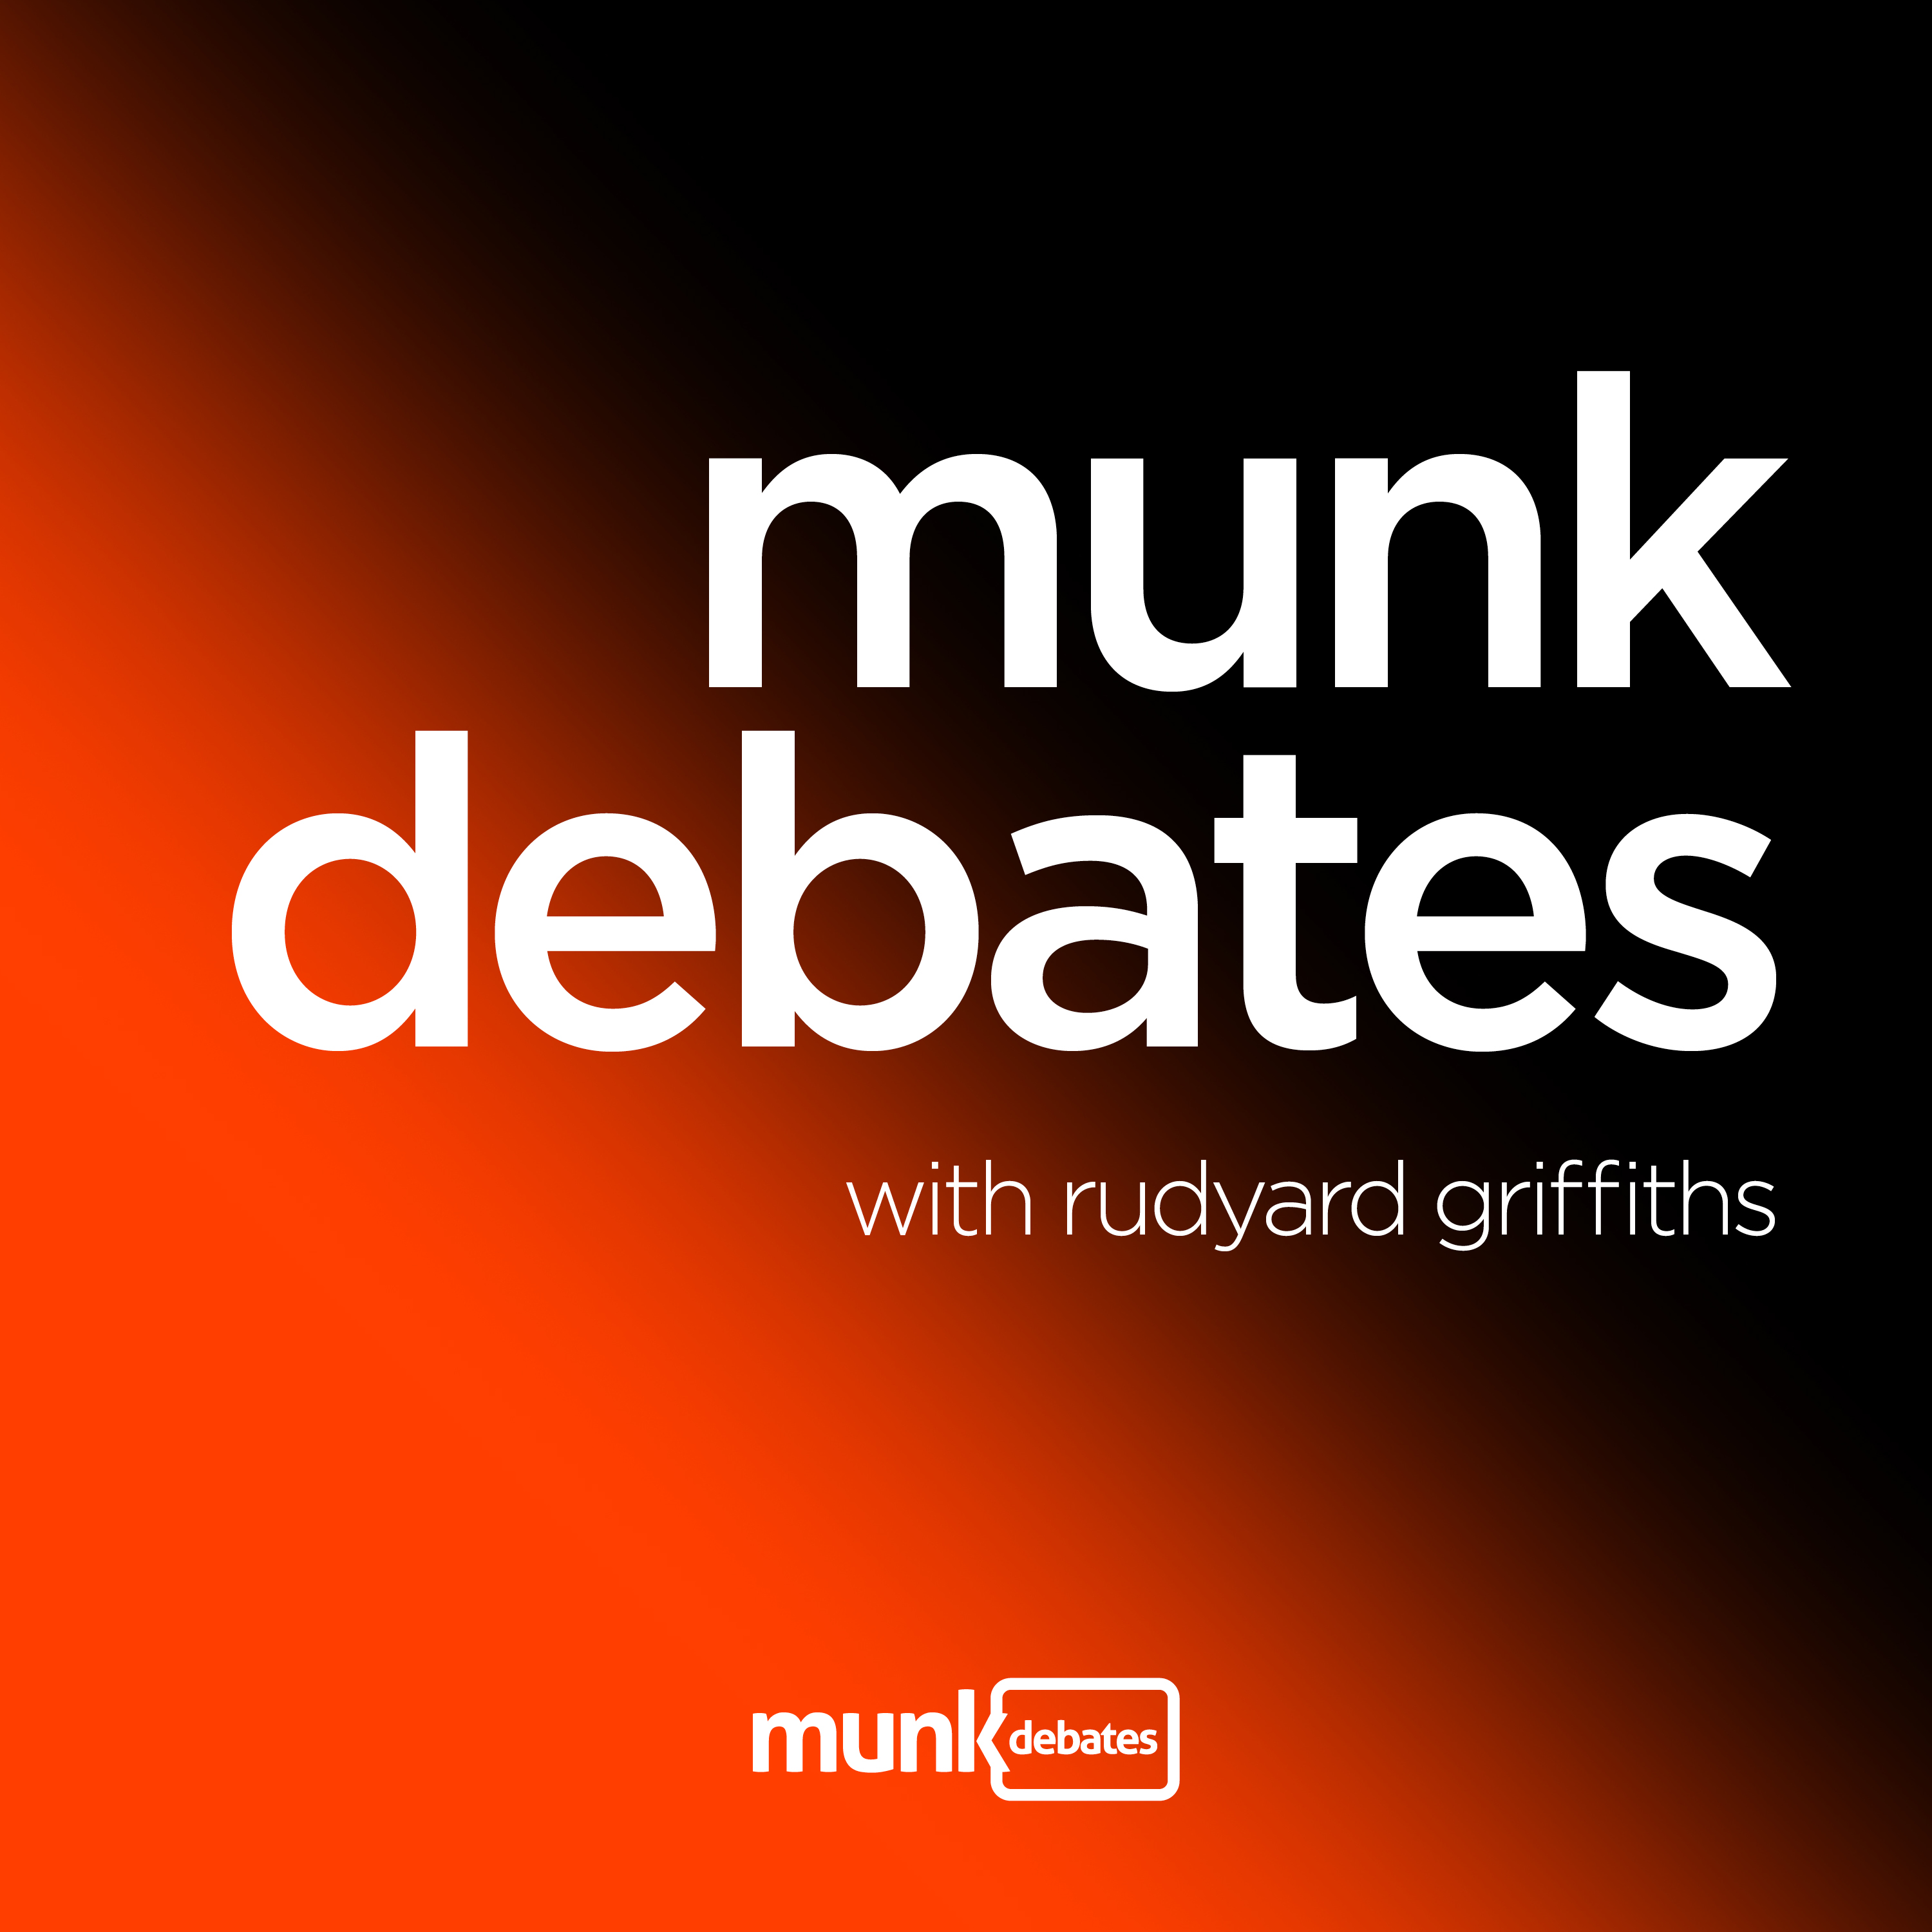 Munk Dialogue with Richard Haass: a crumbling world order